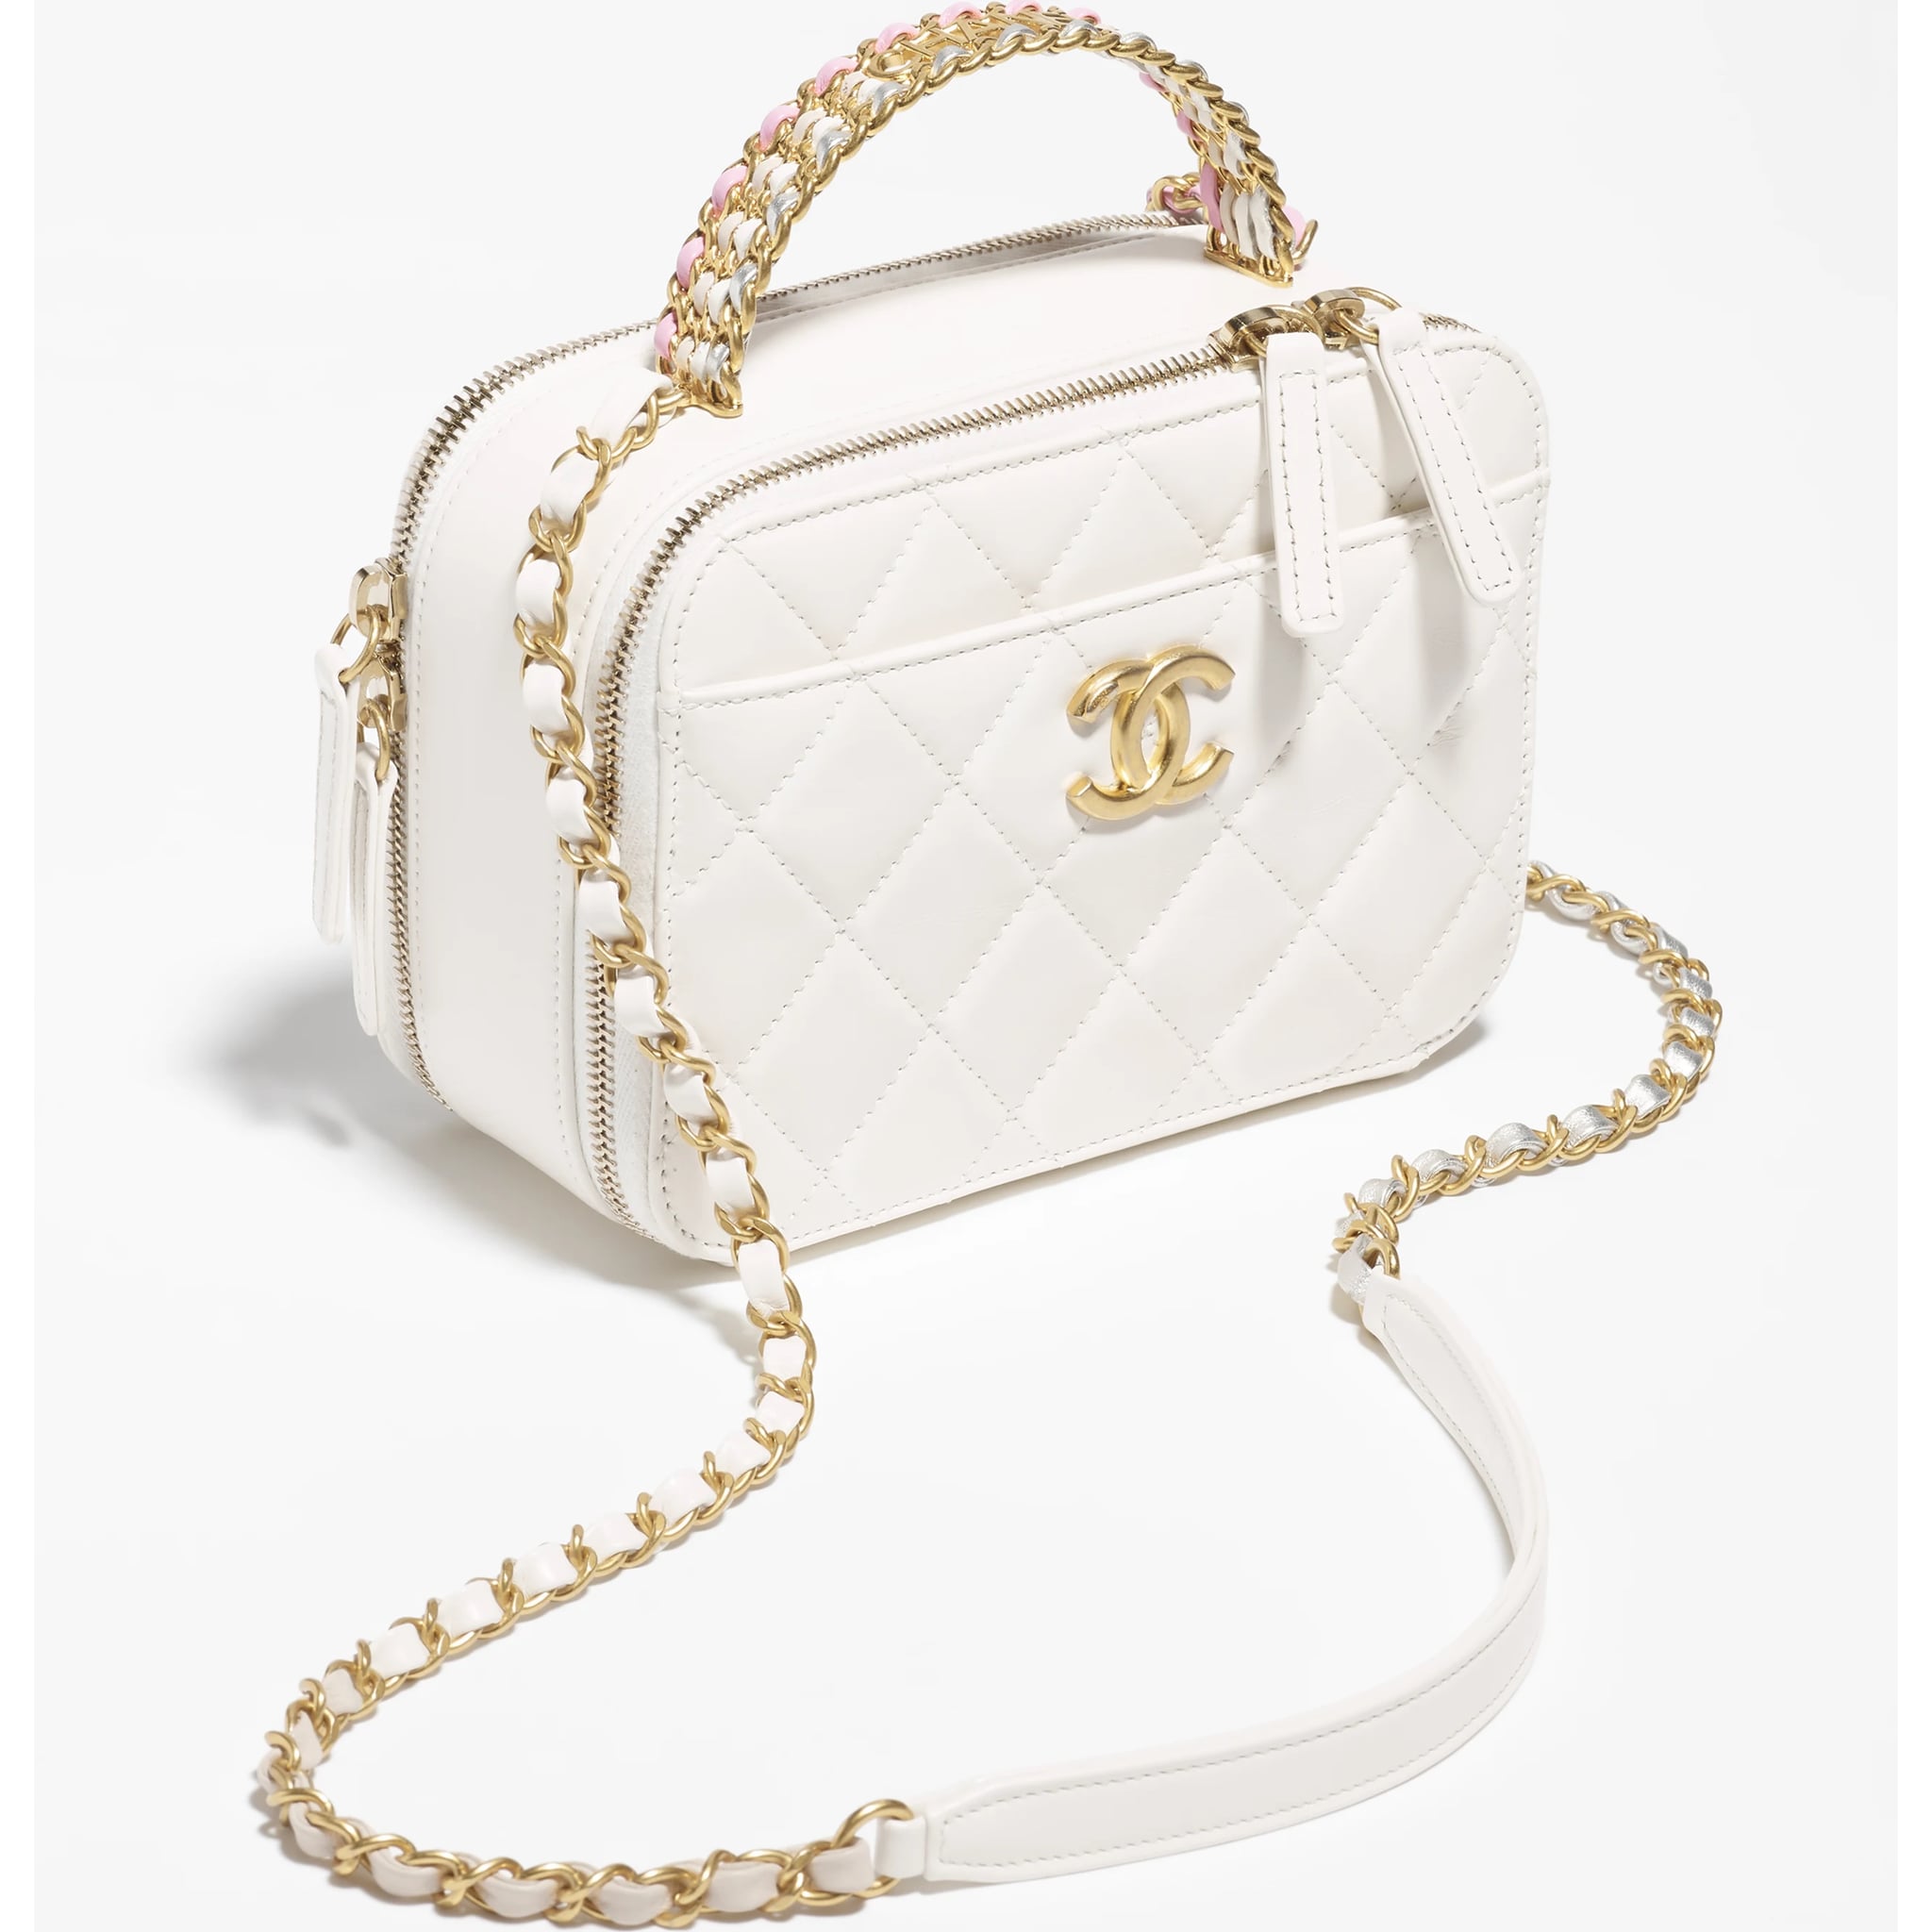 Look 6 Unique Designer Handbags As Seen On Marian Rivera